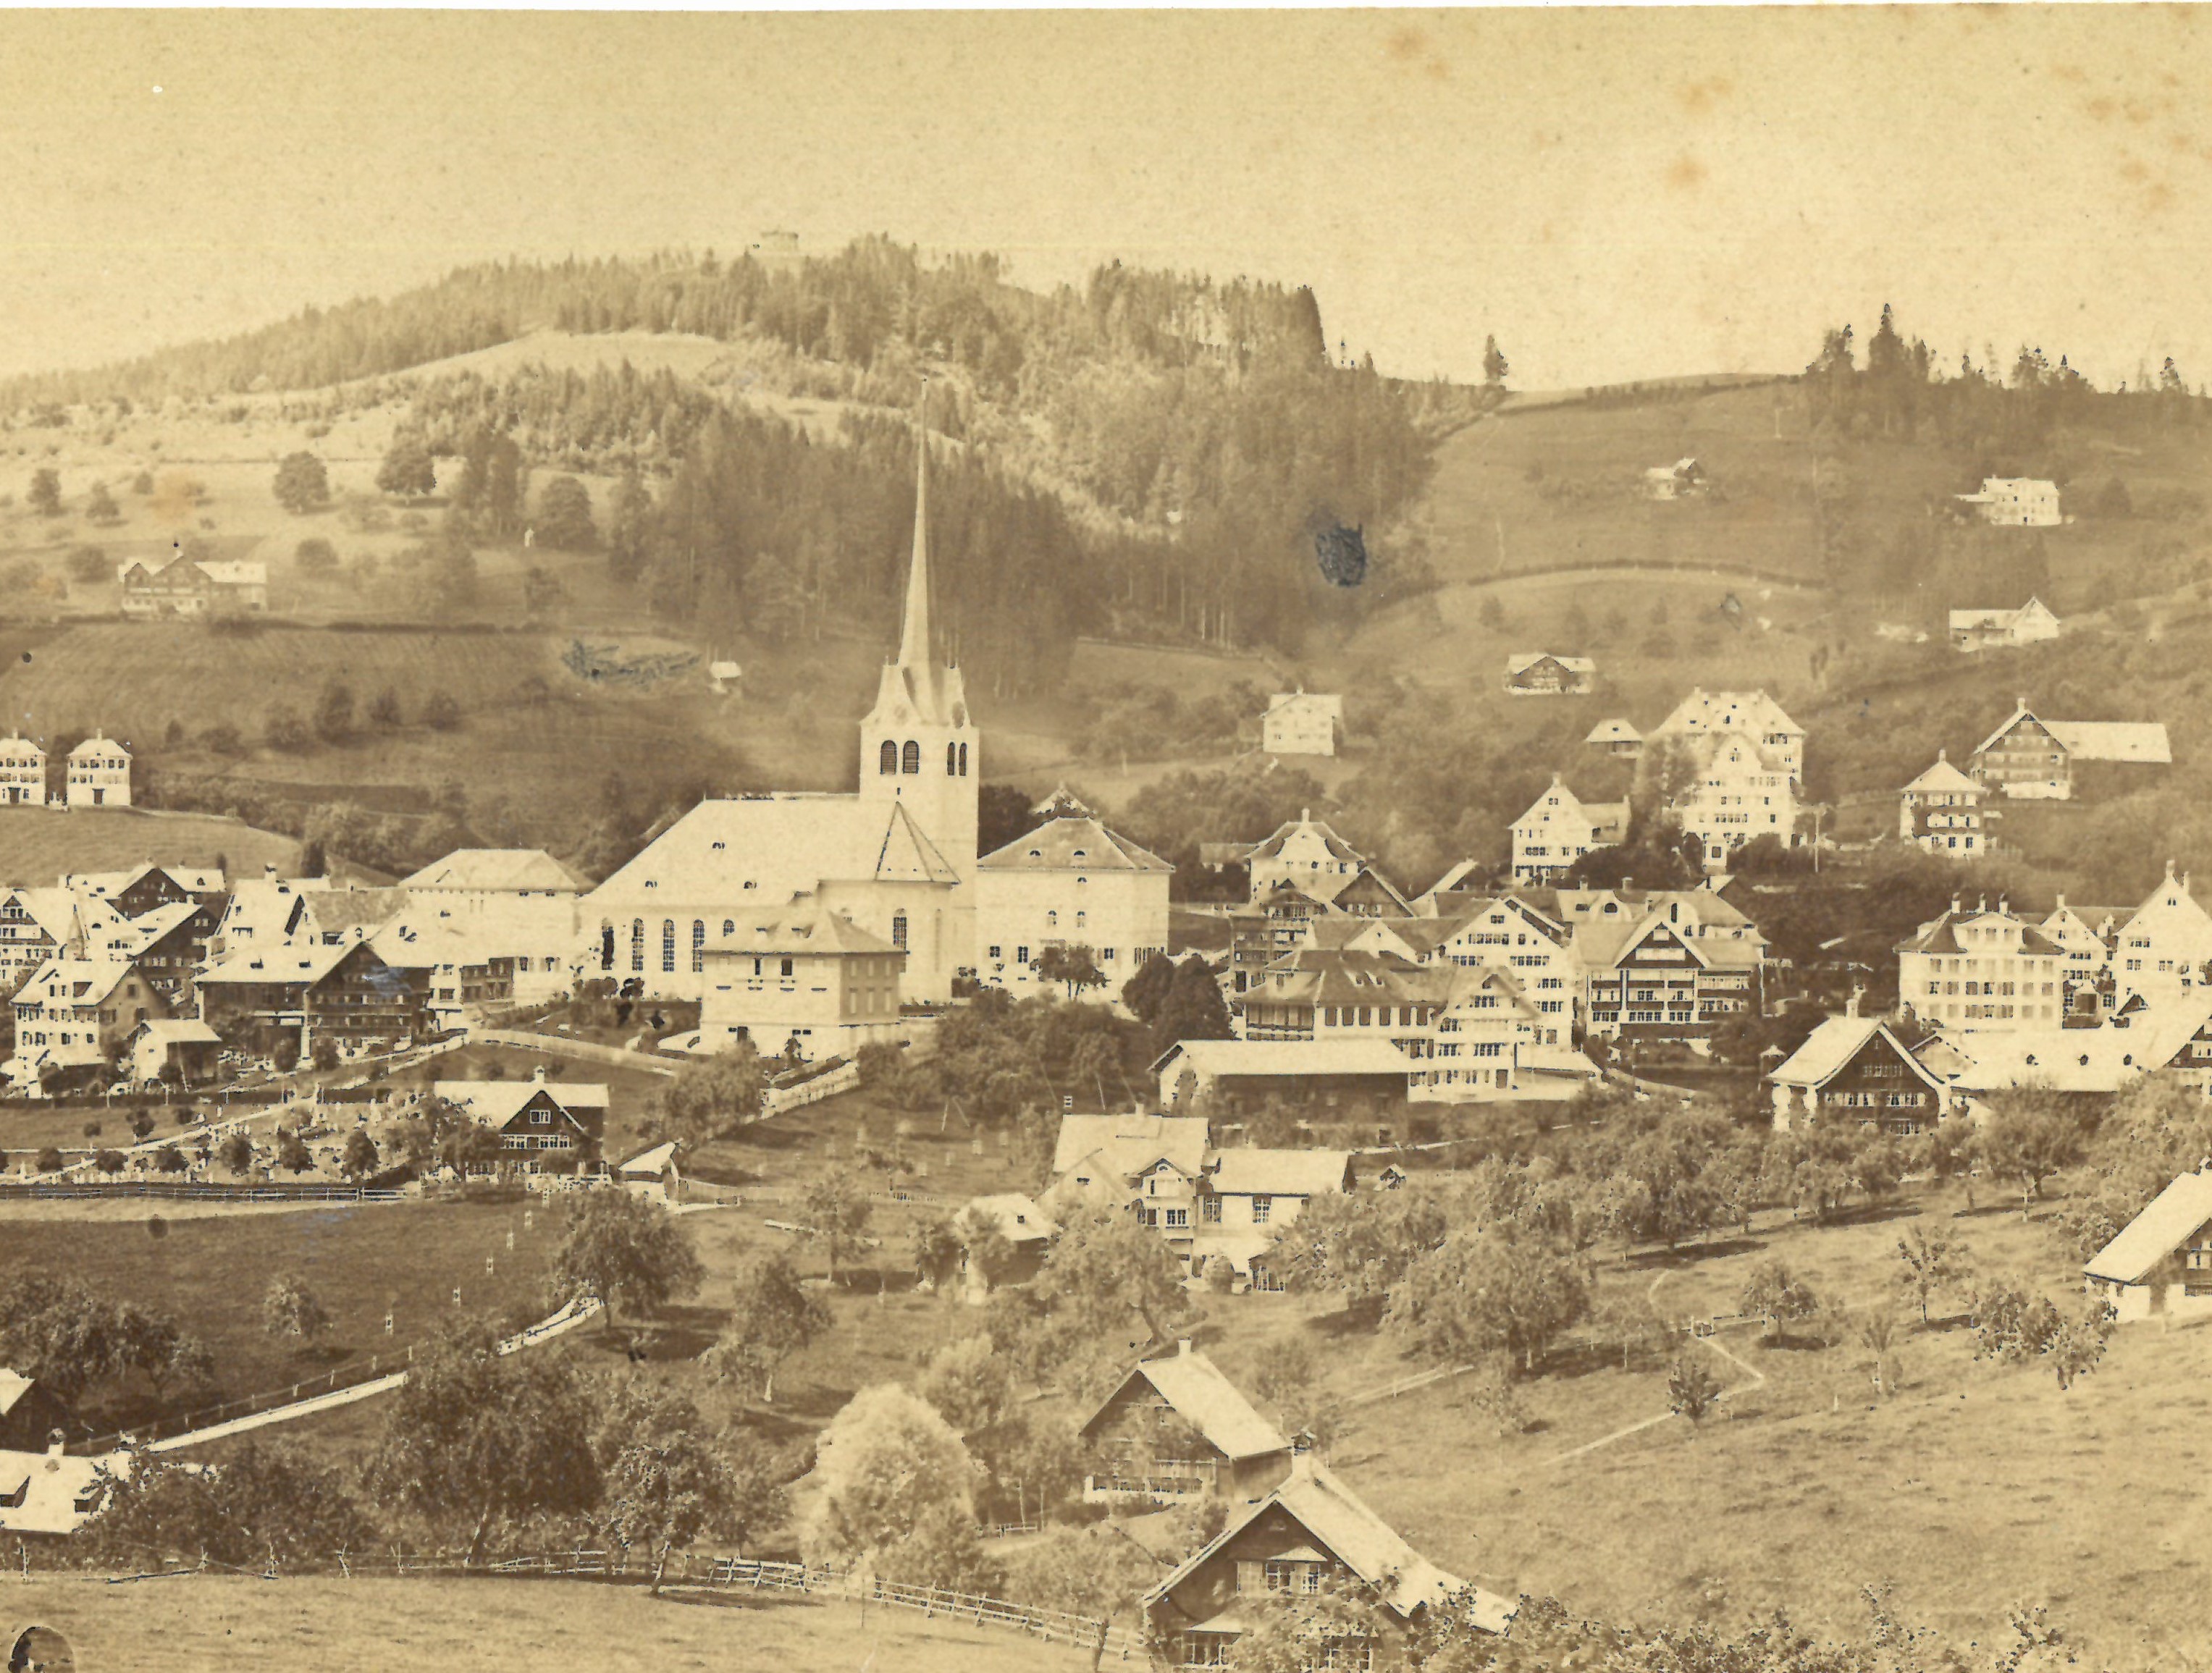 Wohl eine der ältesten Fotografien von Teufen, aufgenommen um 1864